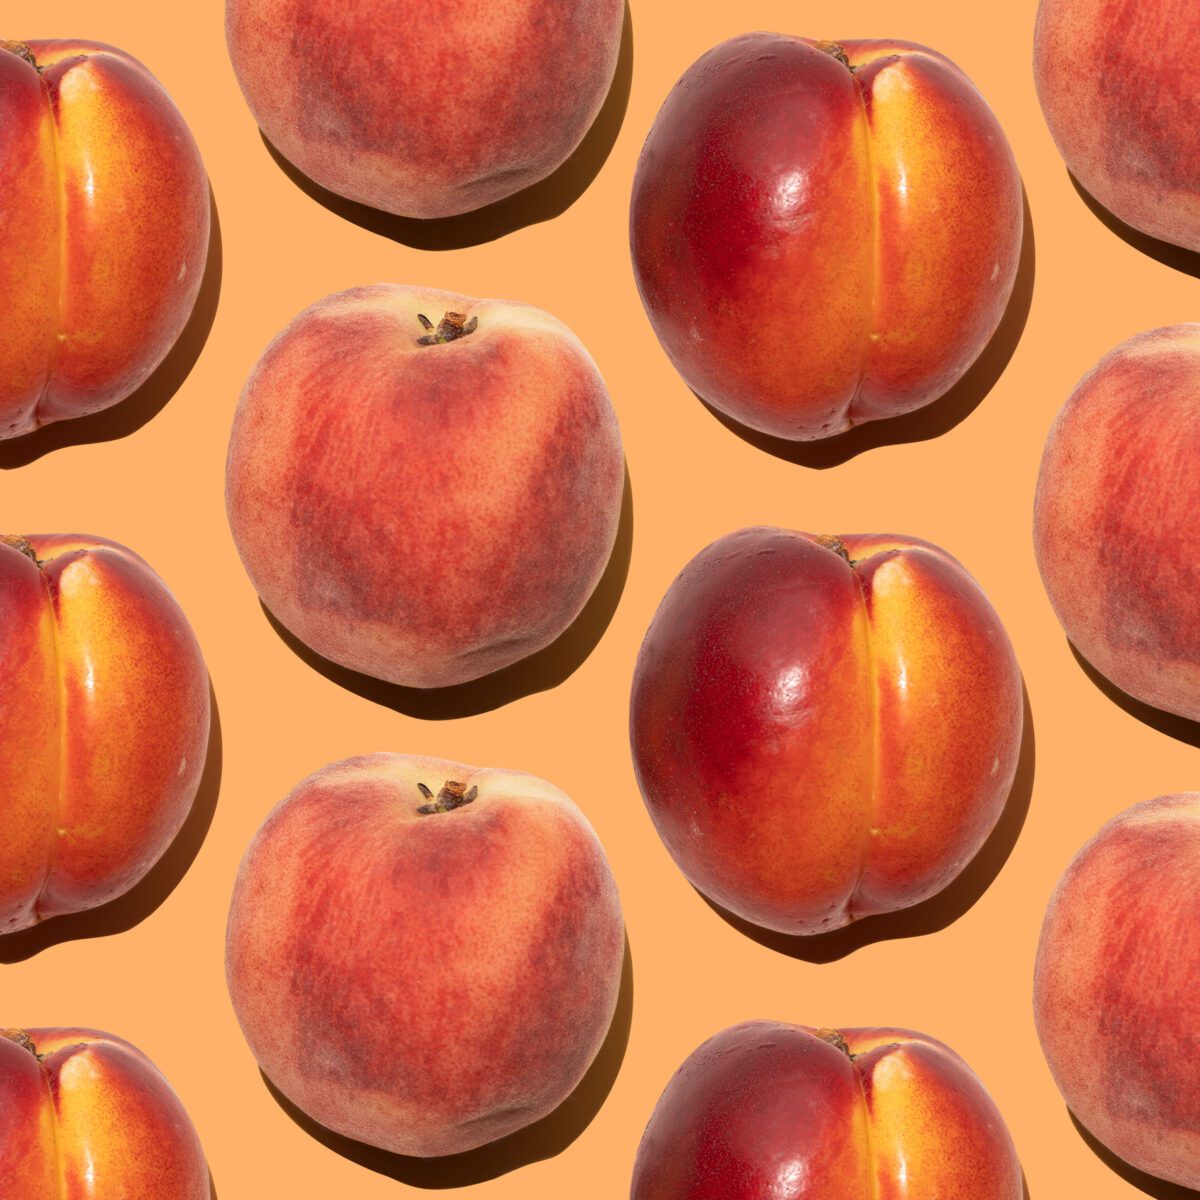 Peaches vs. Nectarines